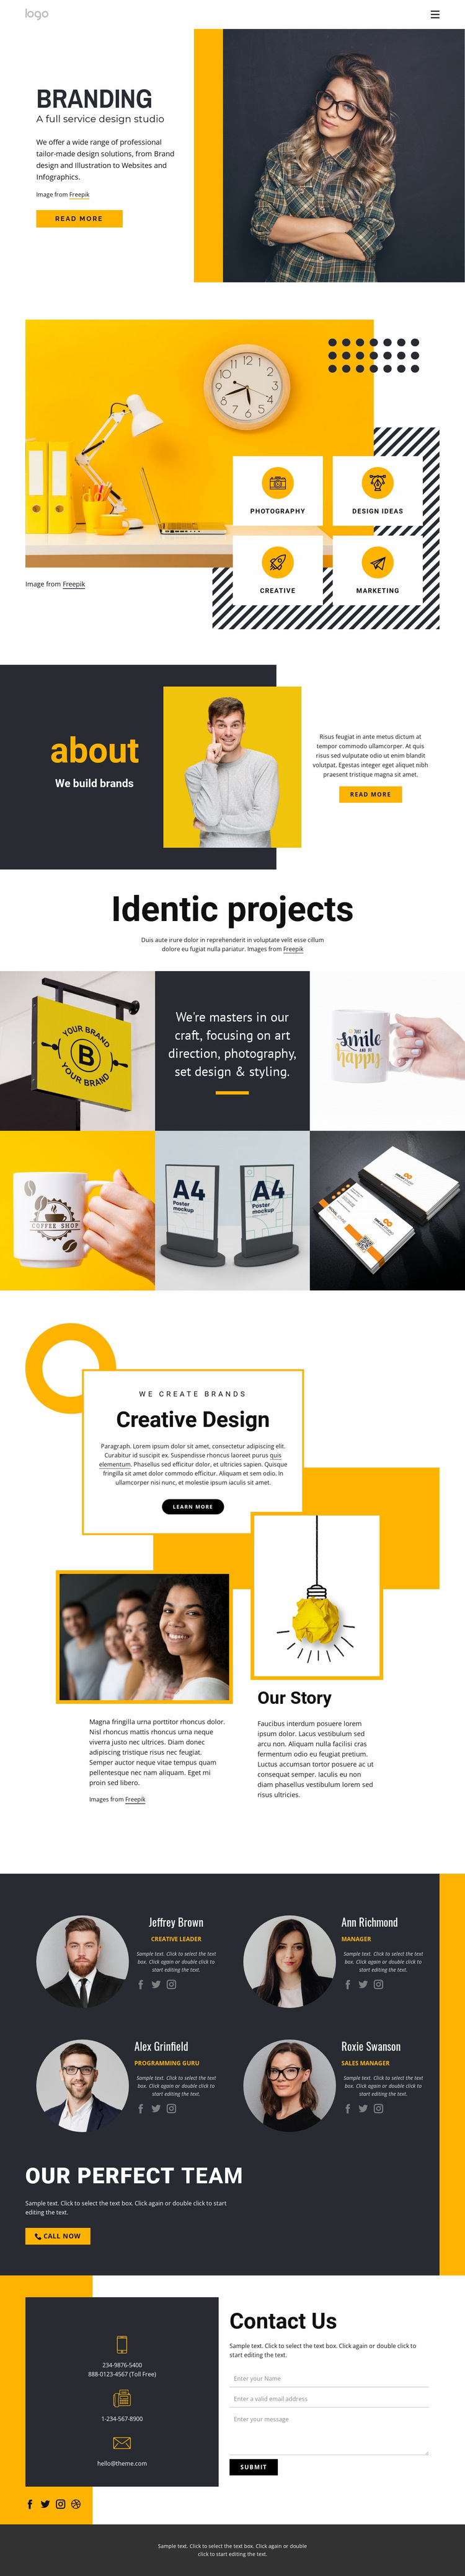 Full-service design studio Website Design